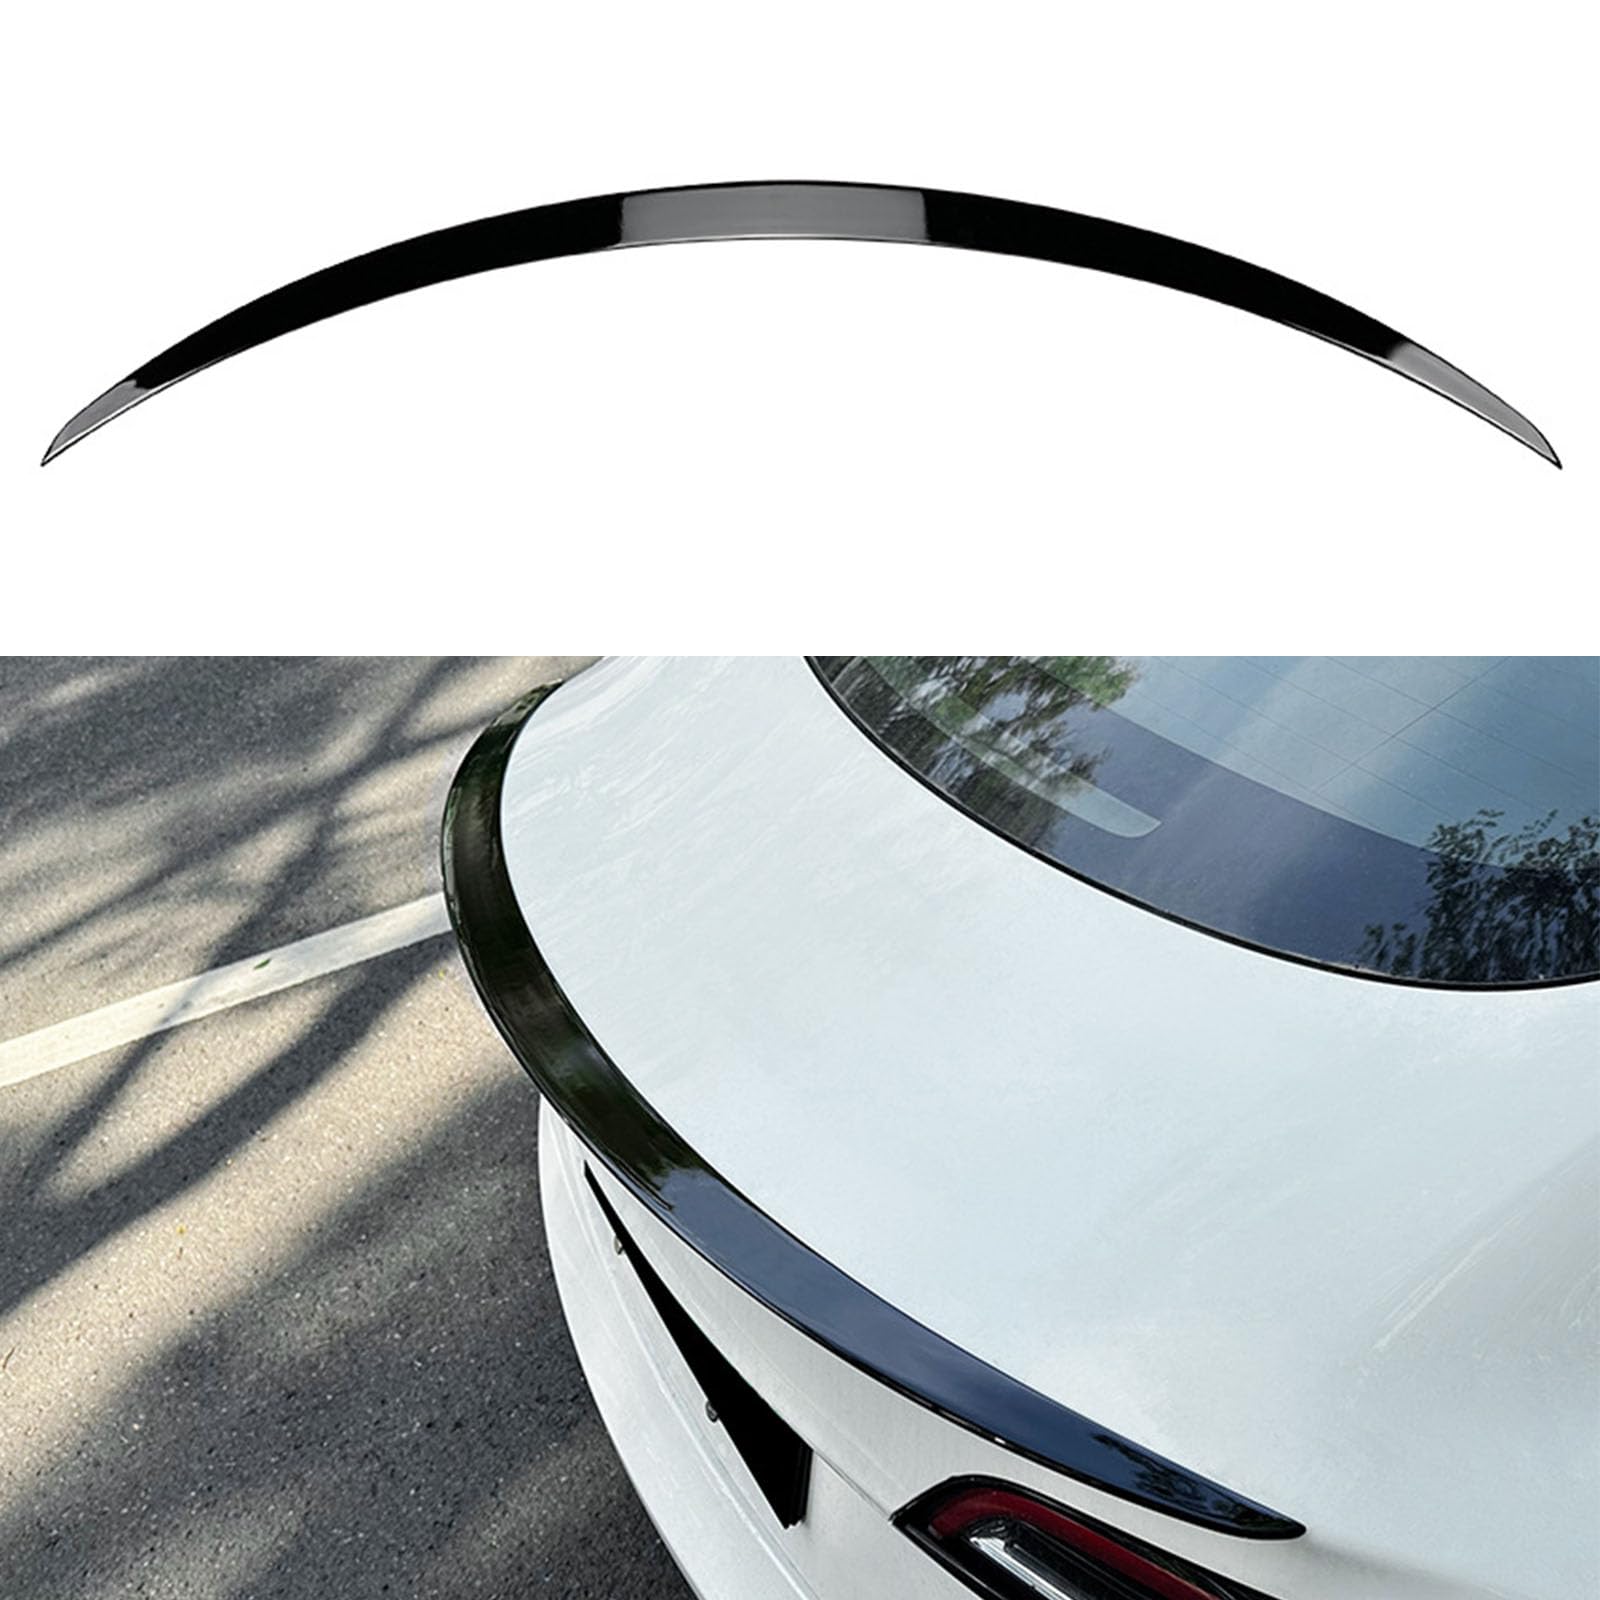 Kompatibel für Tesla Model 3 Performance, Auto Heckflügel Kofferraumspoiler Kofferraum Flügel Lippe Spoiler Bodykits Zubehör,A Gloss Black von YPGHBHD